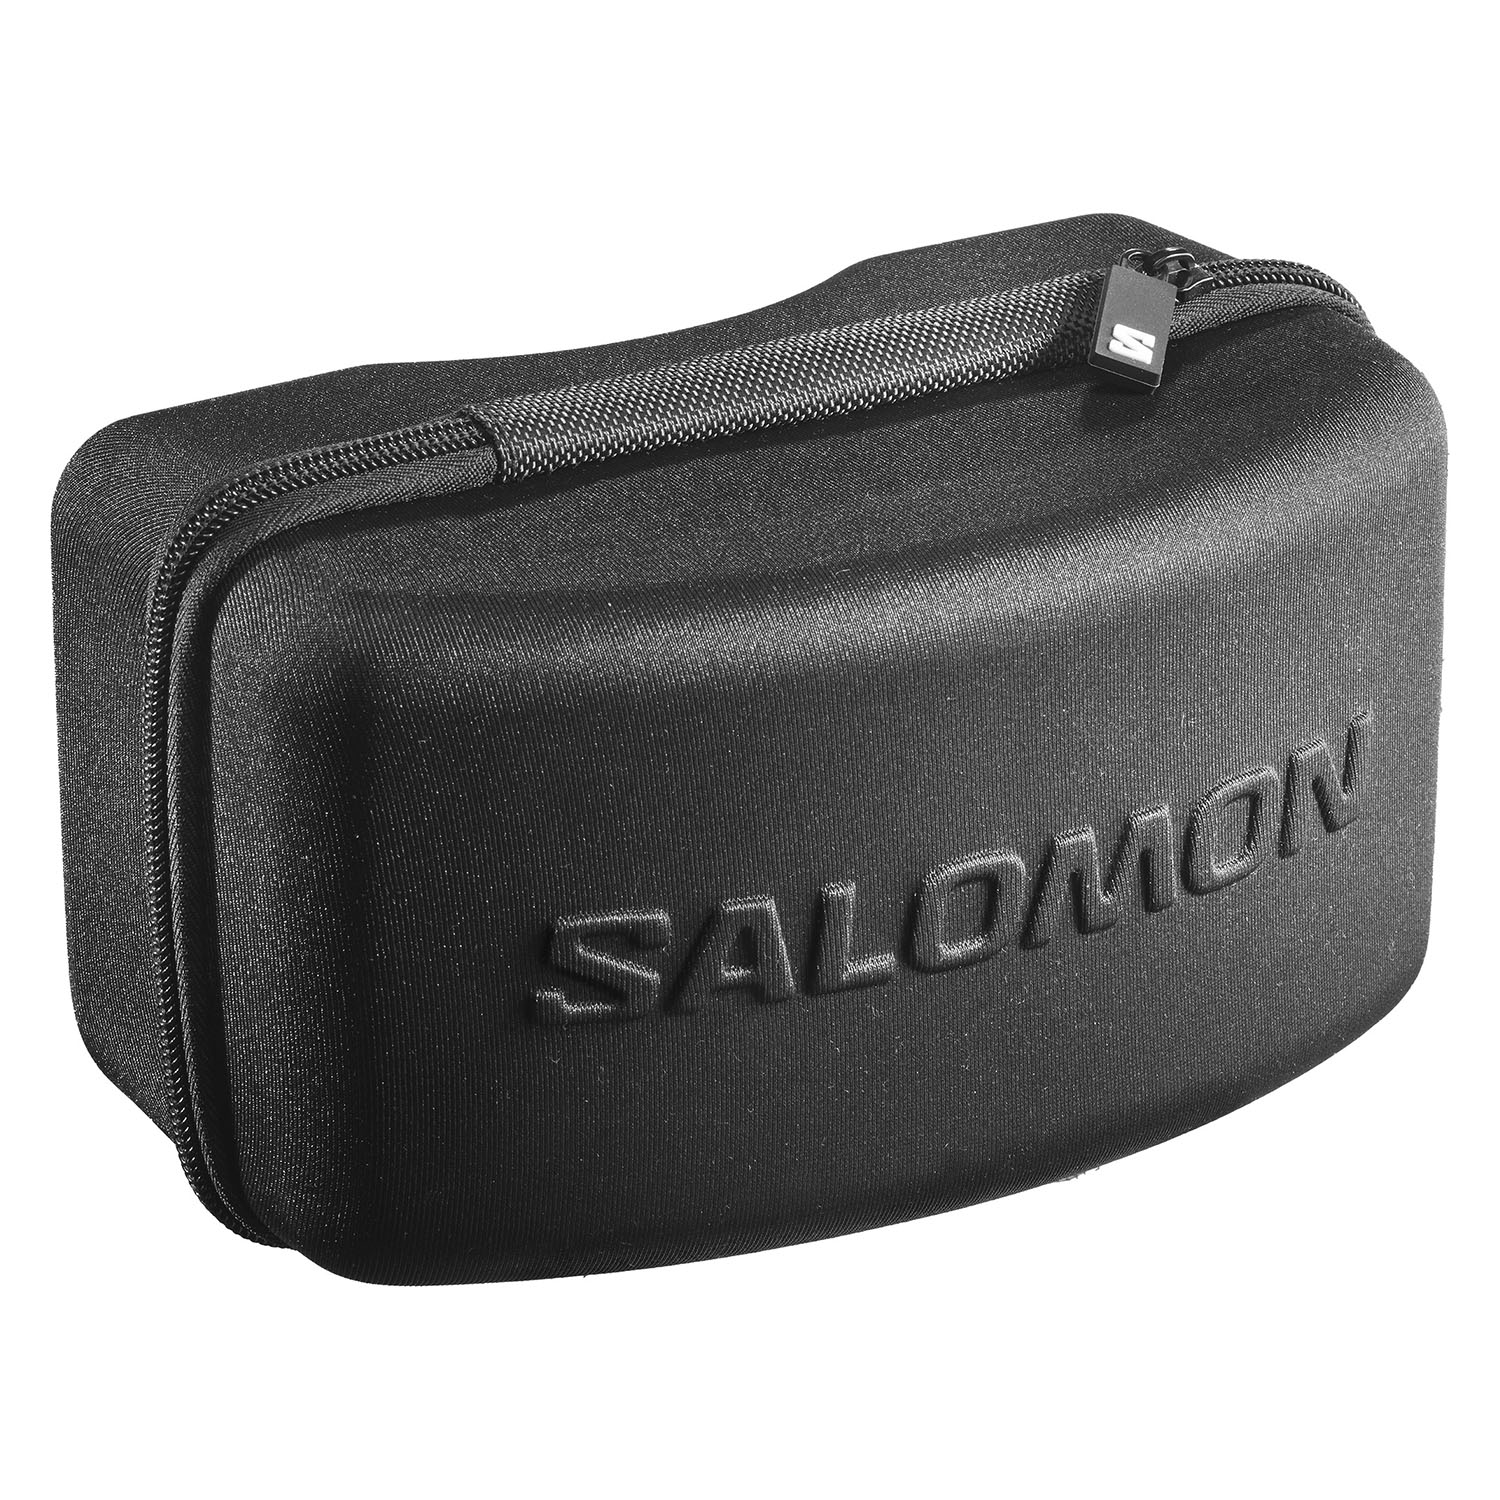 Очки горнолыжные SALOMON Sentry Pro Sigma Tropical Peach